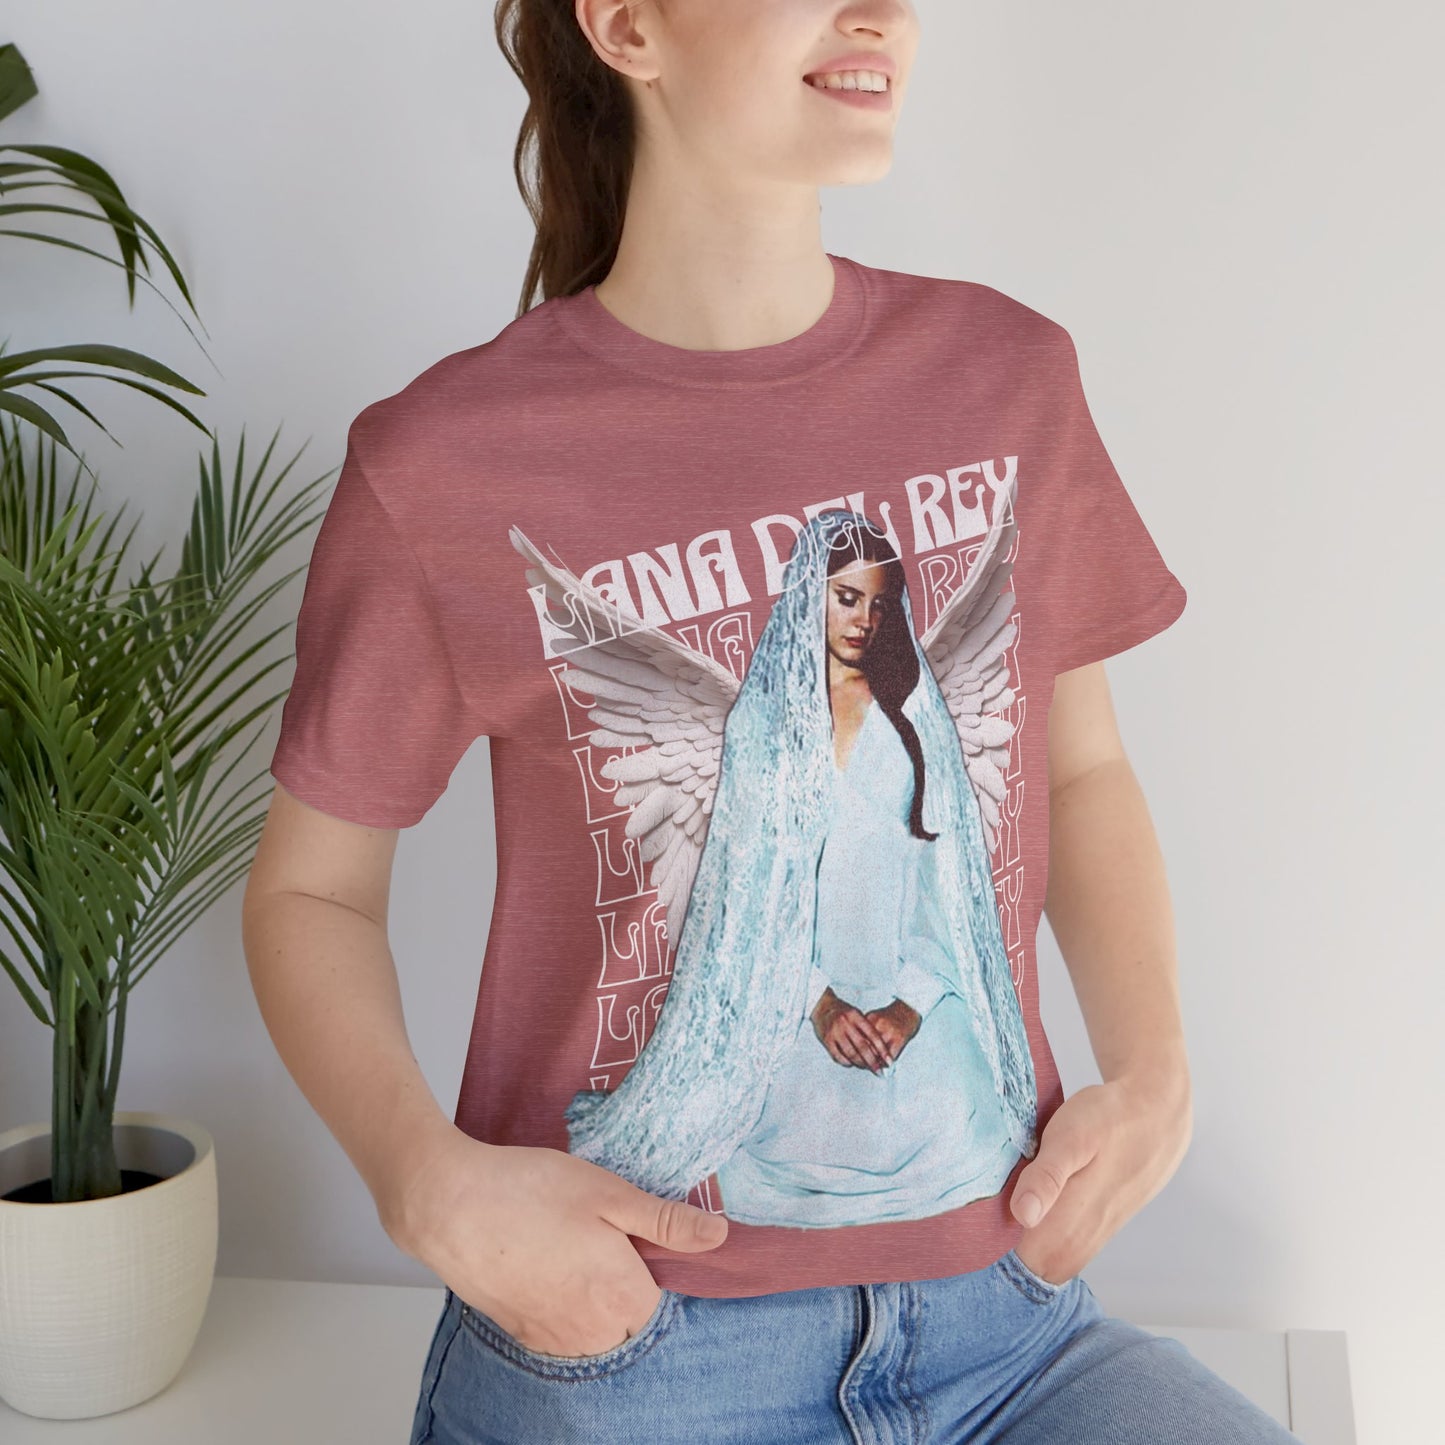 Lana Del Rey T-Shirt Heather Mauve